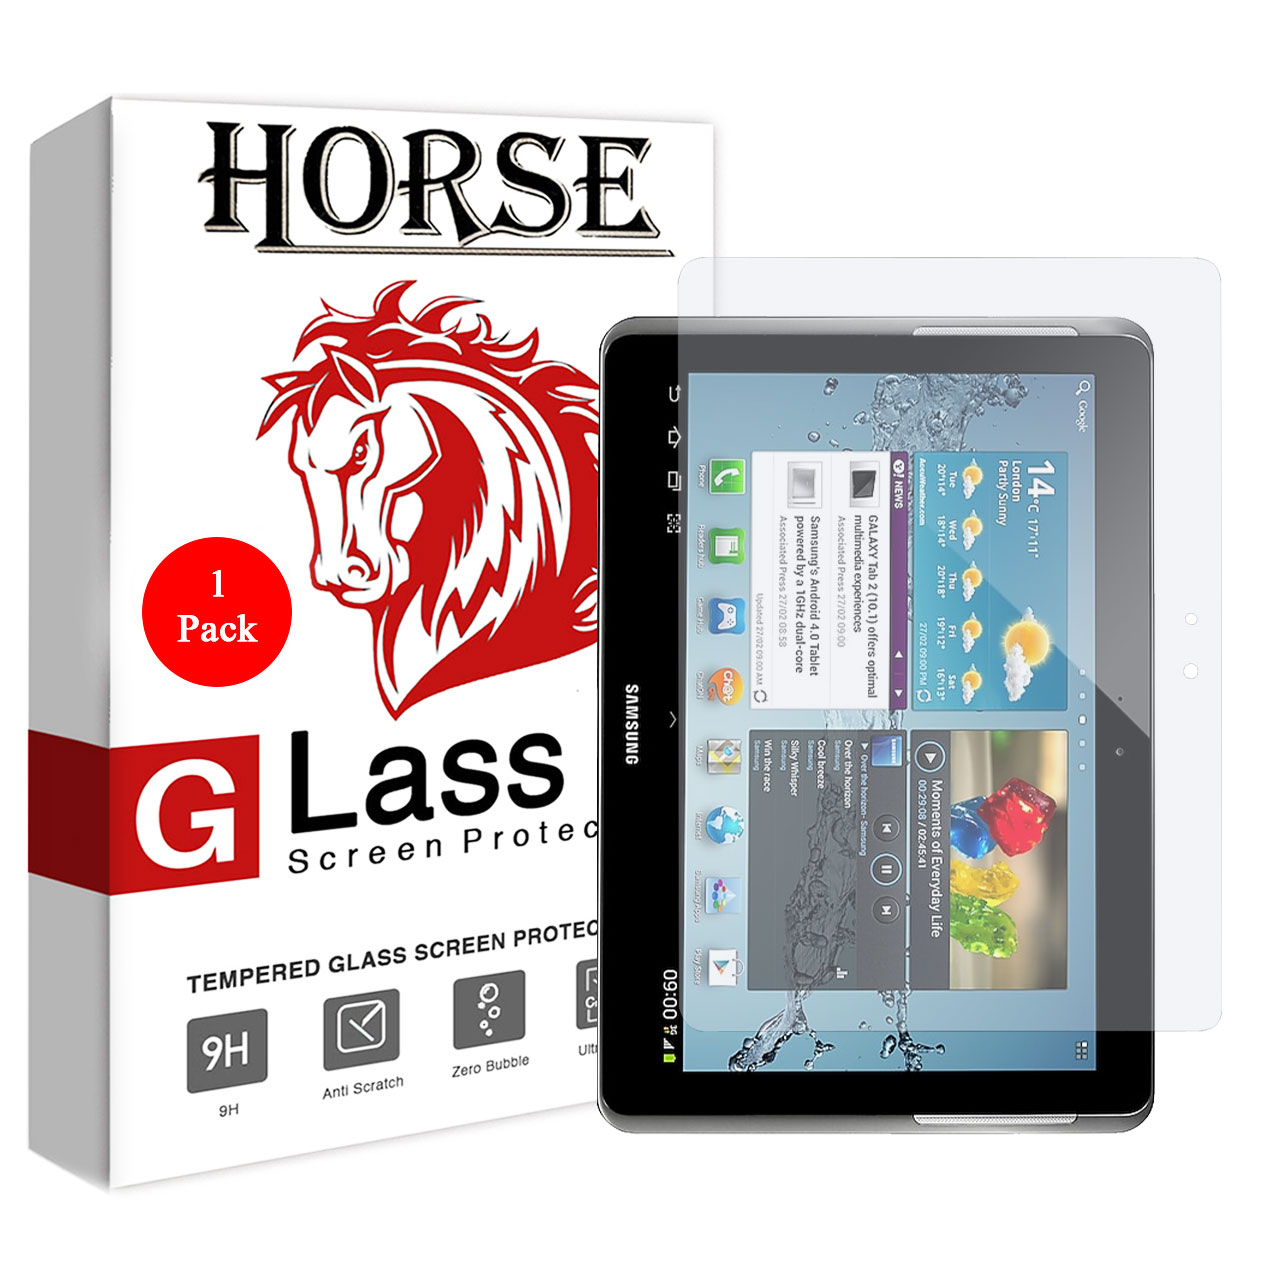  محافظ صفحه نمایش گلس هورس مدل UCCT2 مناسب برای تبلت سامسونگ Galaxy Tab 2 10.1 P5100